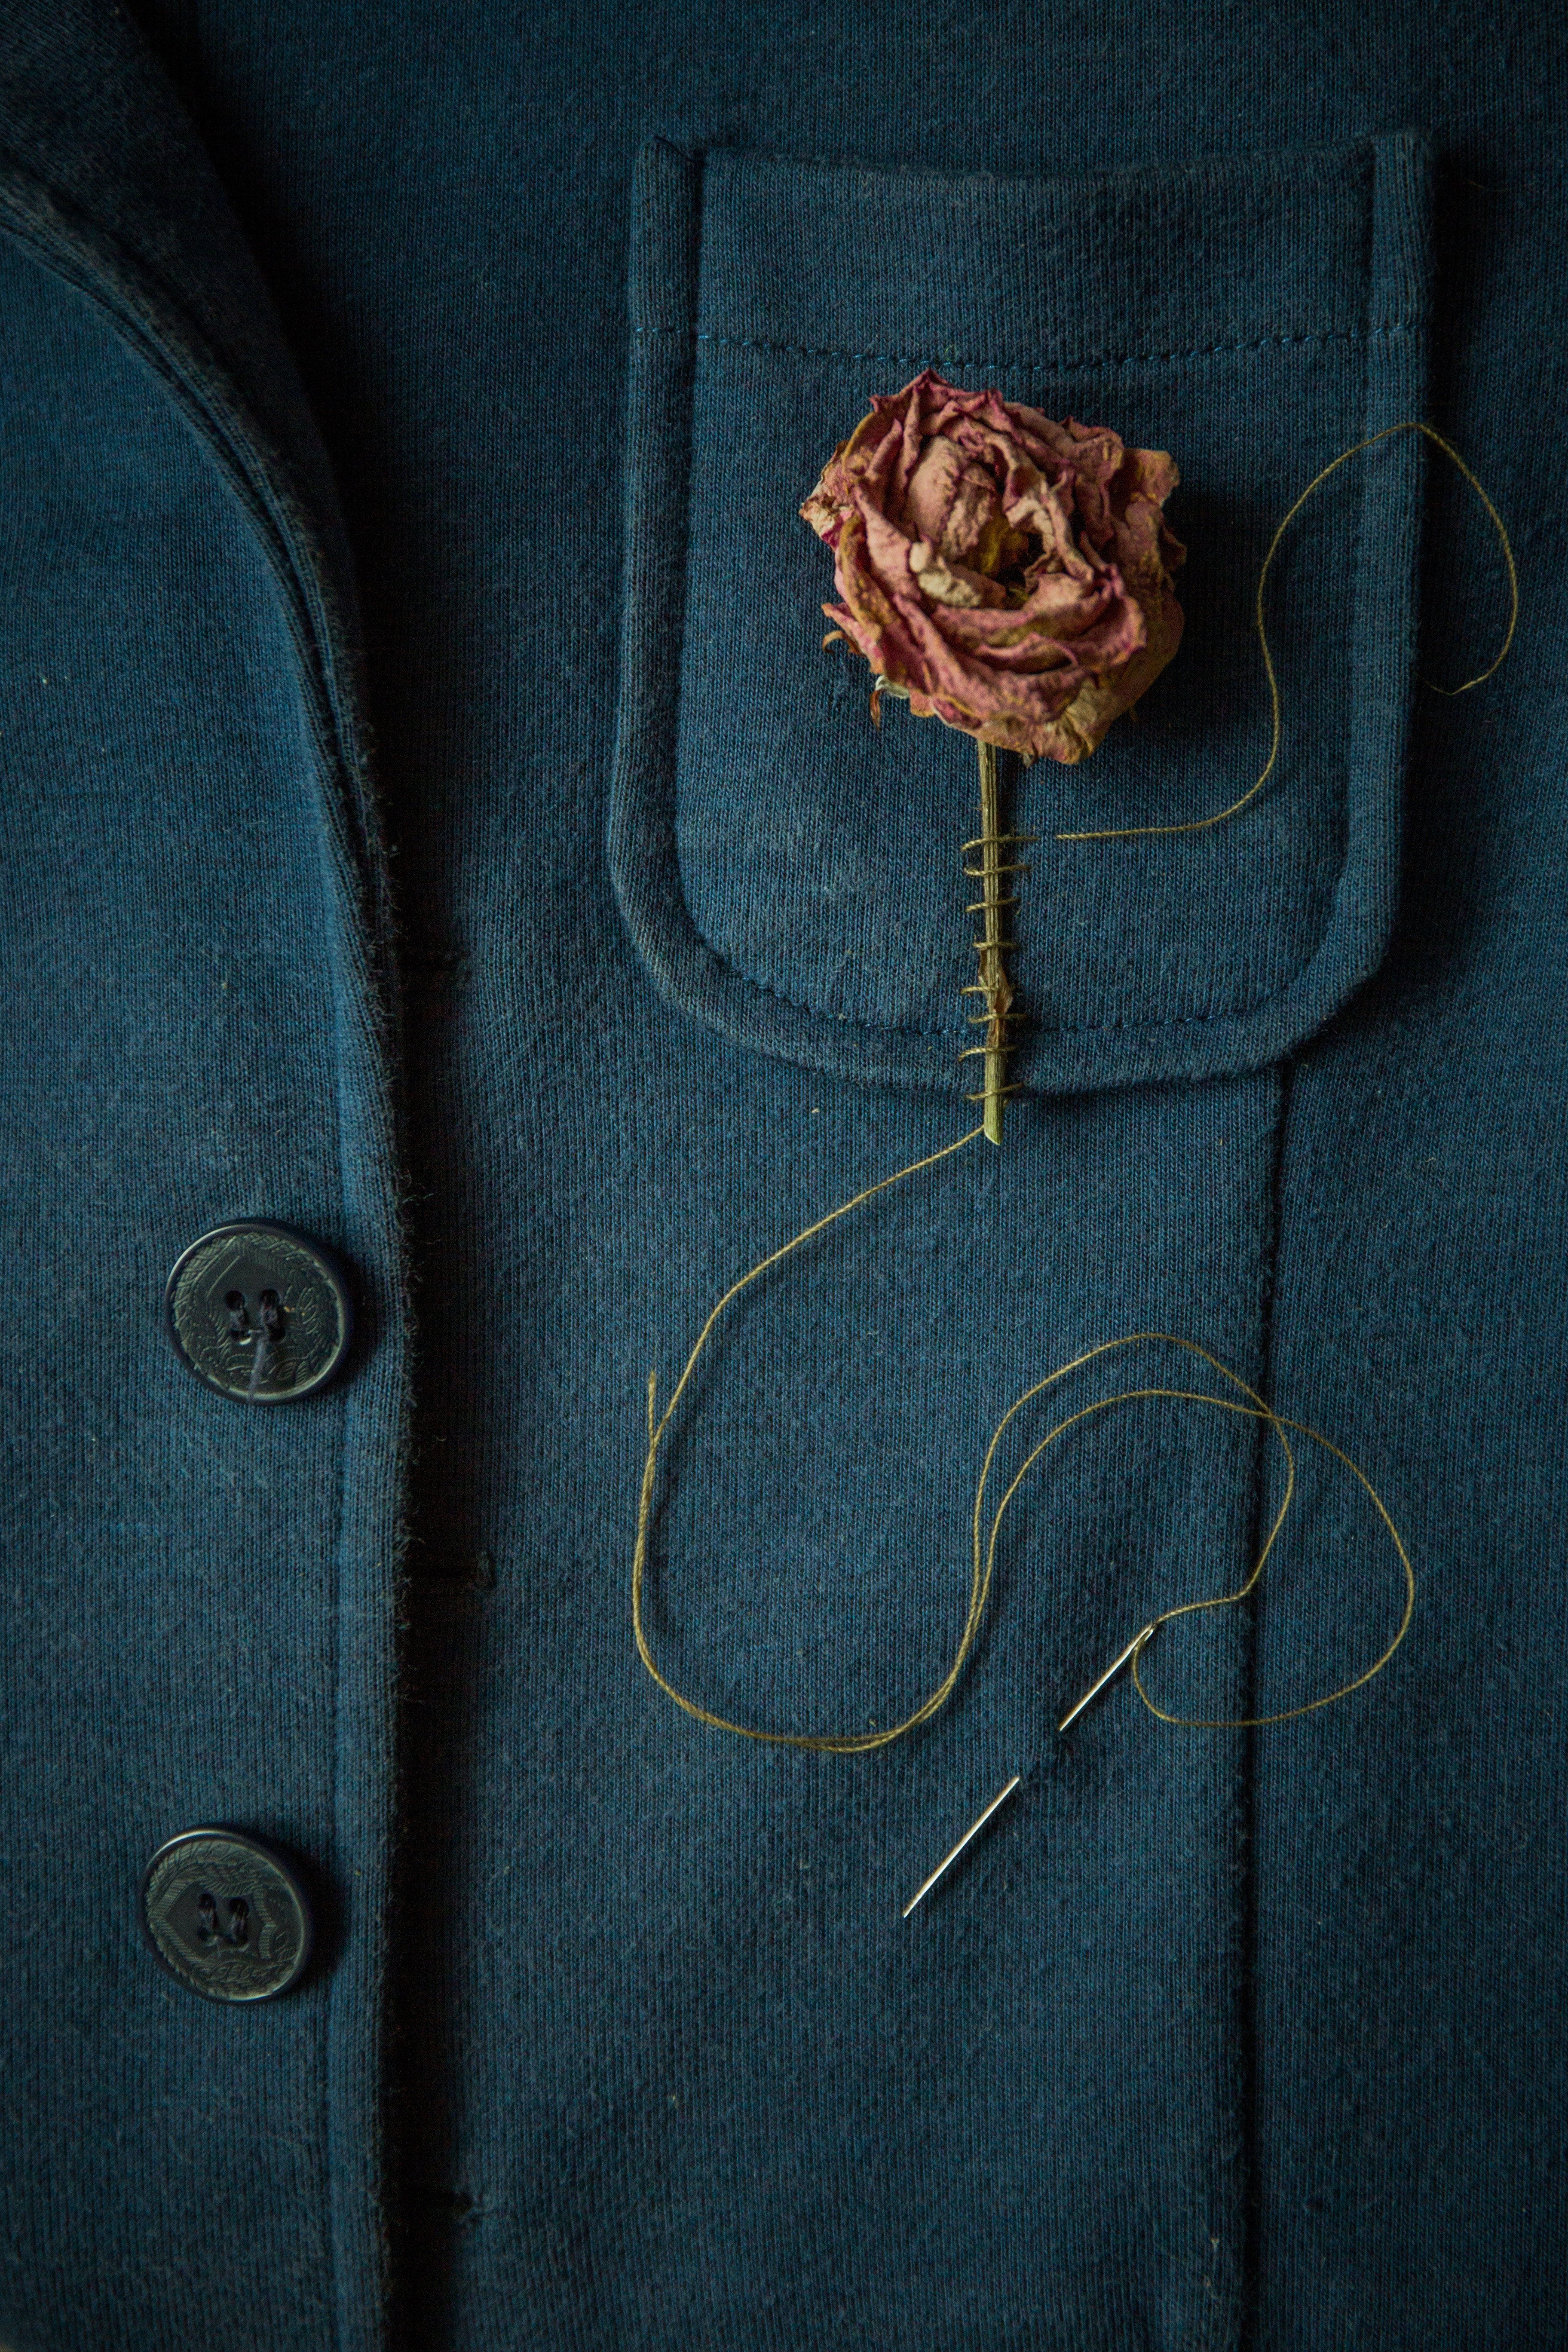 Rosa seca cosida al bolsillo de una chaqueta. | Foto: Pexels